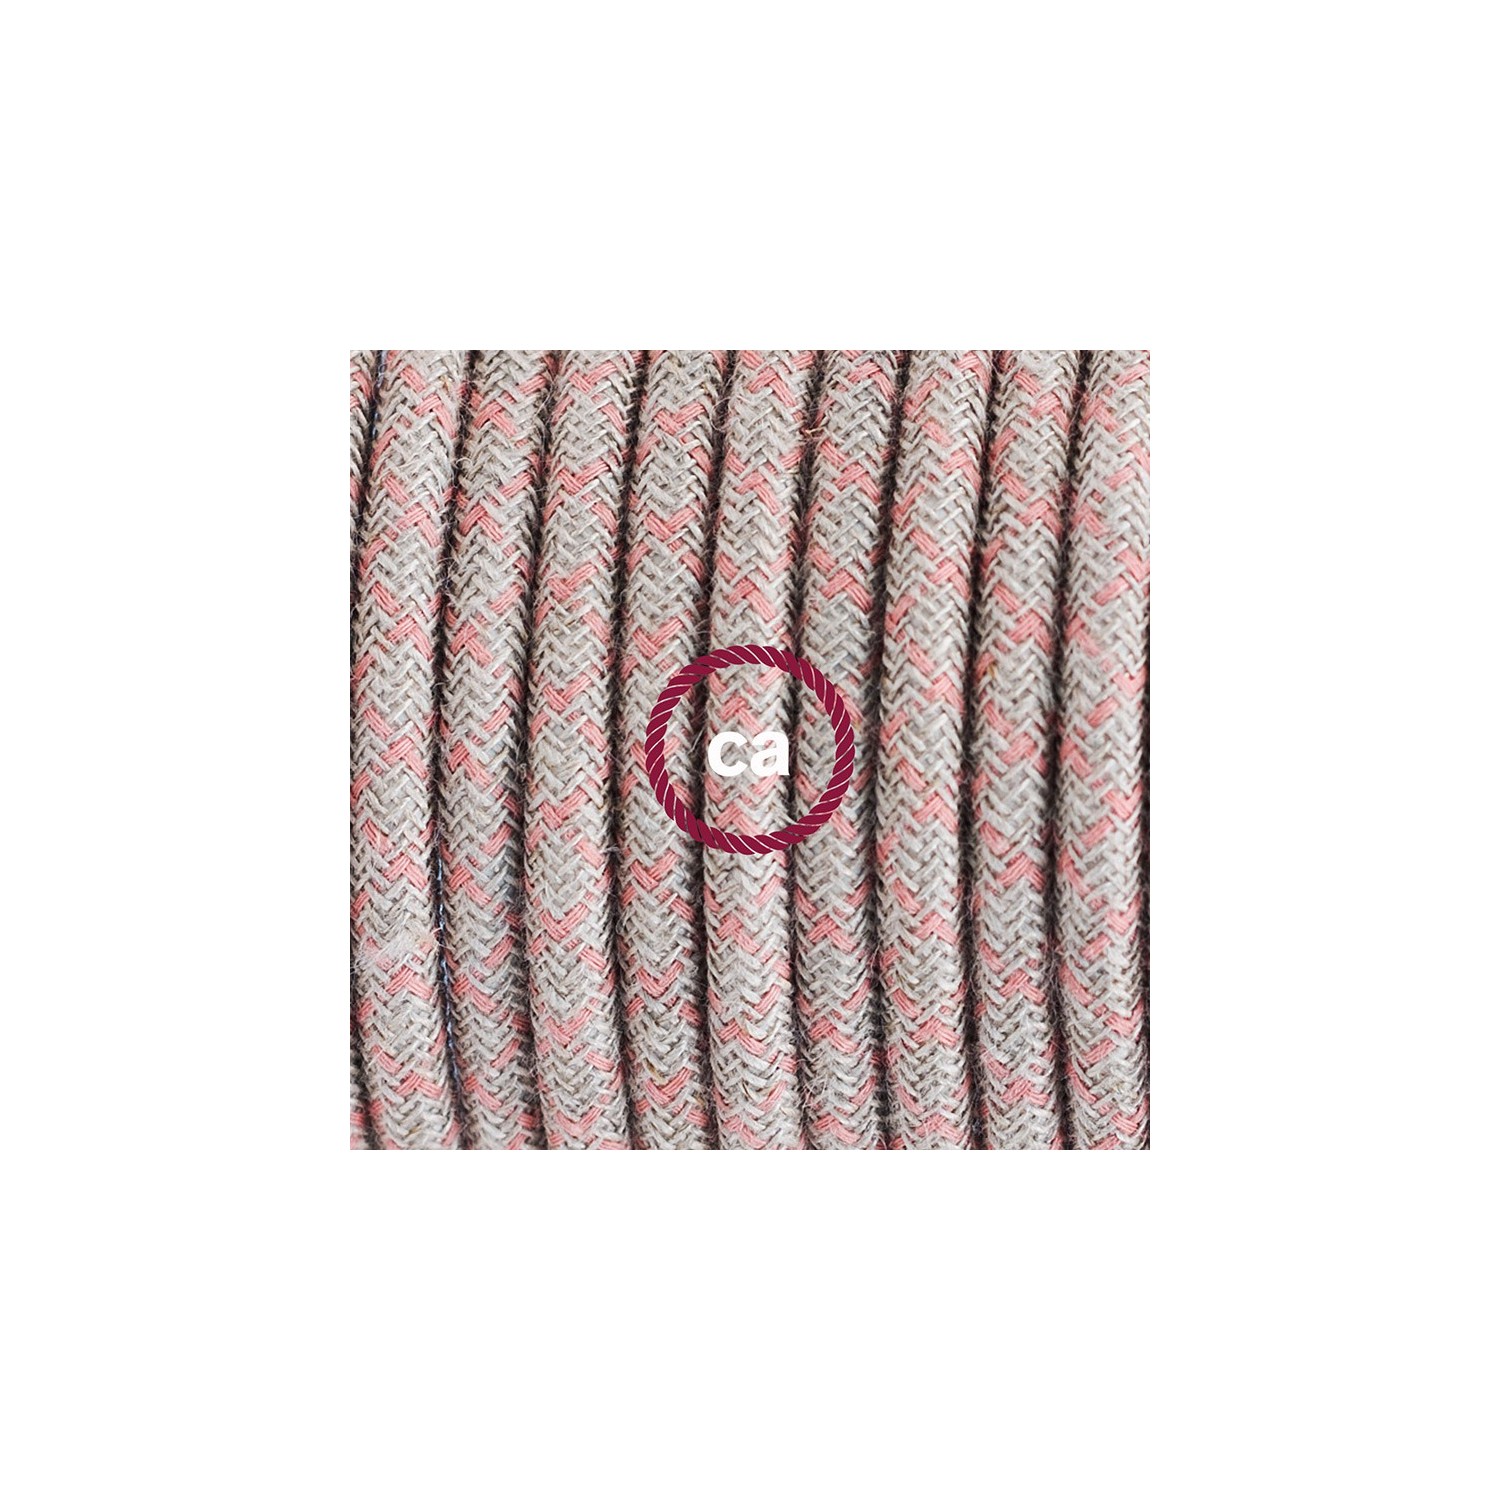 Komplet s talnim stikalom, RD61 romb, rožnati naravni lan in bombaž 3 m. Izberite barvo vtikača in stikala.